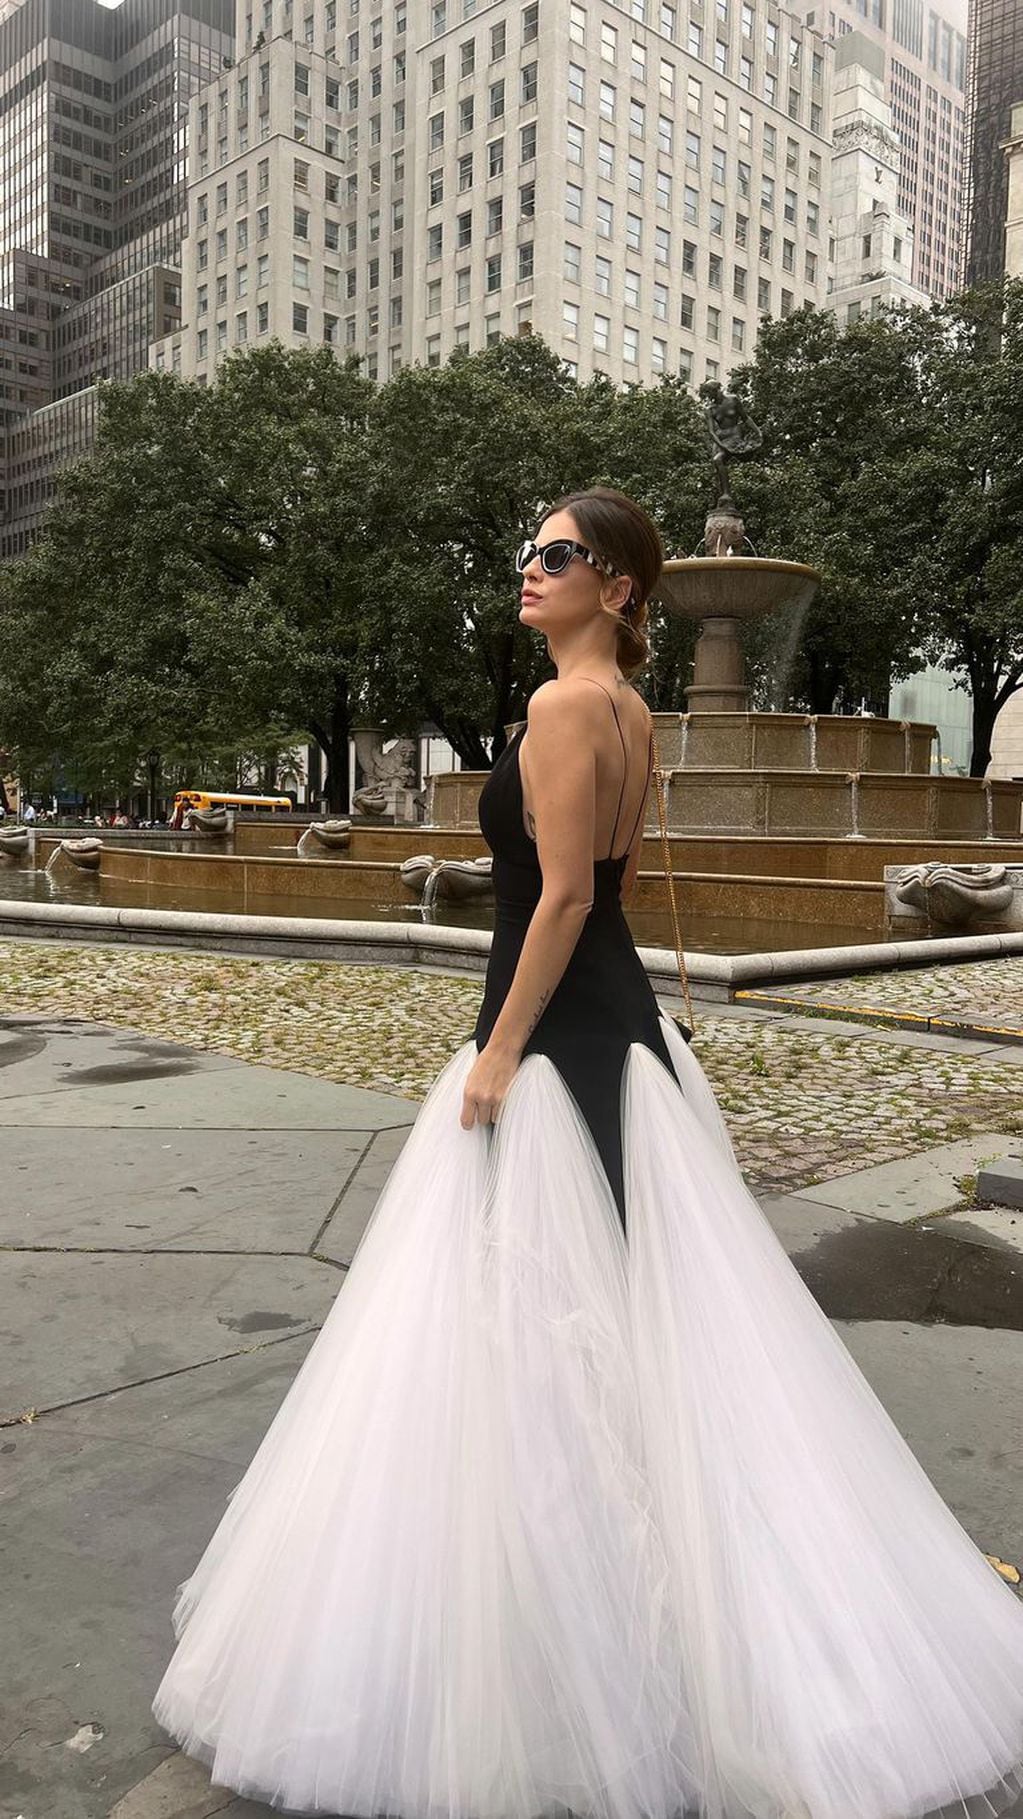 La China Suárez expone su vestido en las calles de Nueva York.